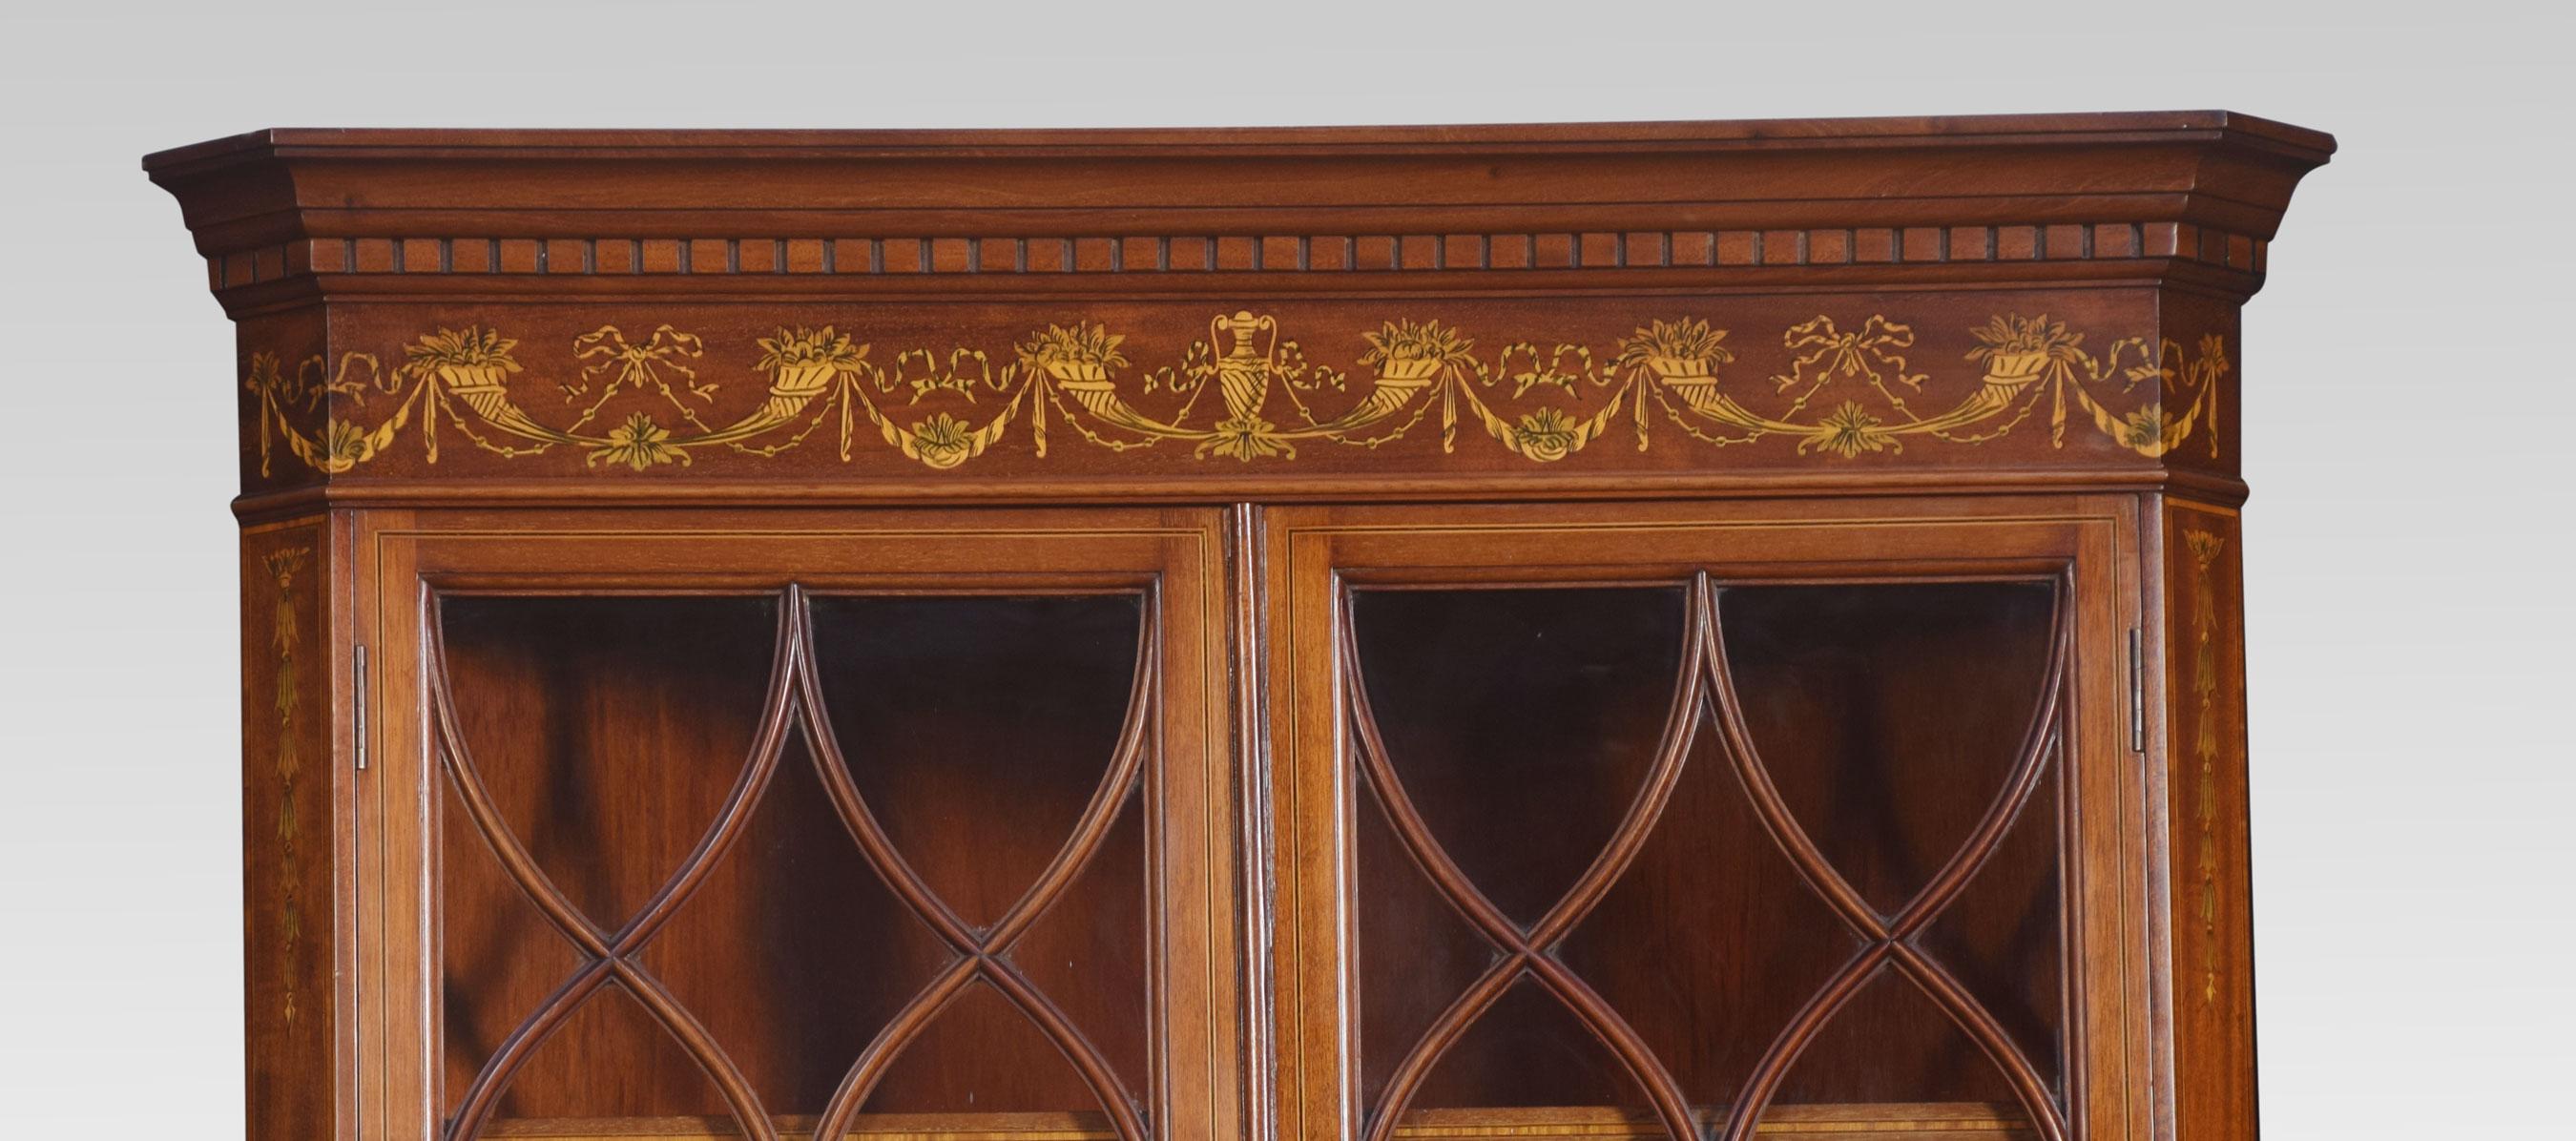 Eckschrank aus Mahagoni, Satinholz und Intarsien, mit geformtem Gesims über zwei verglasten Türen, die zwei feste Einlegeböden umschließen. Der untere Teil mit entsprechendem Fries und zwei Schranktüren, die kunstvoll mit Intarsien verziert sind,